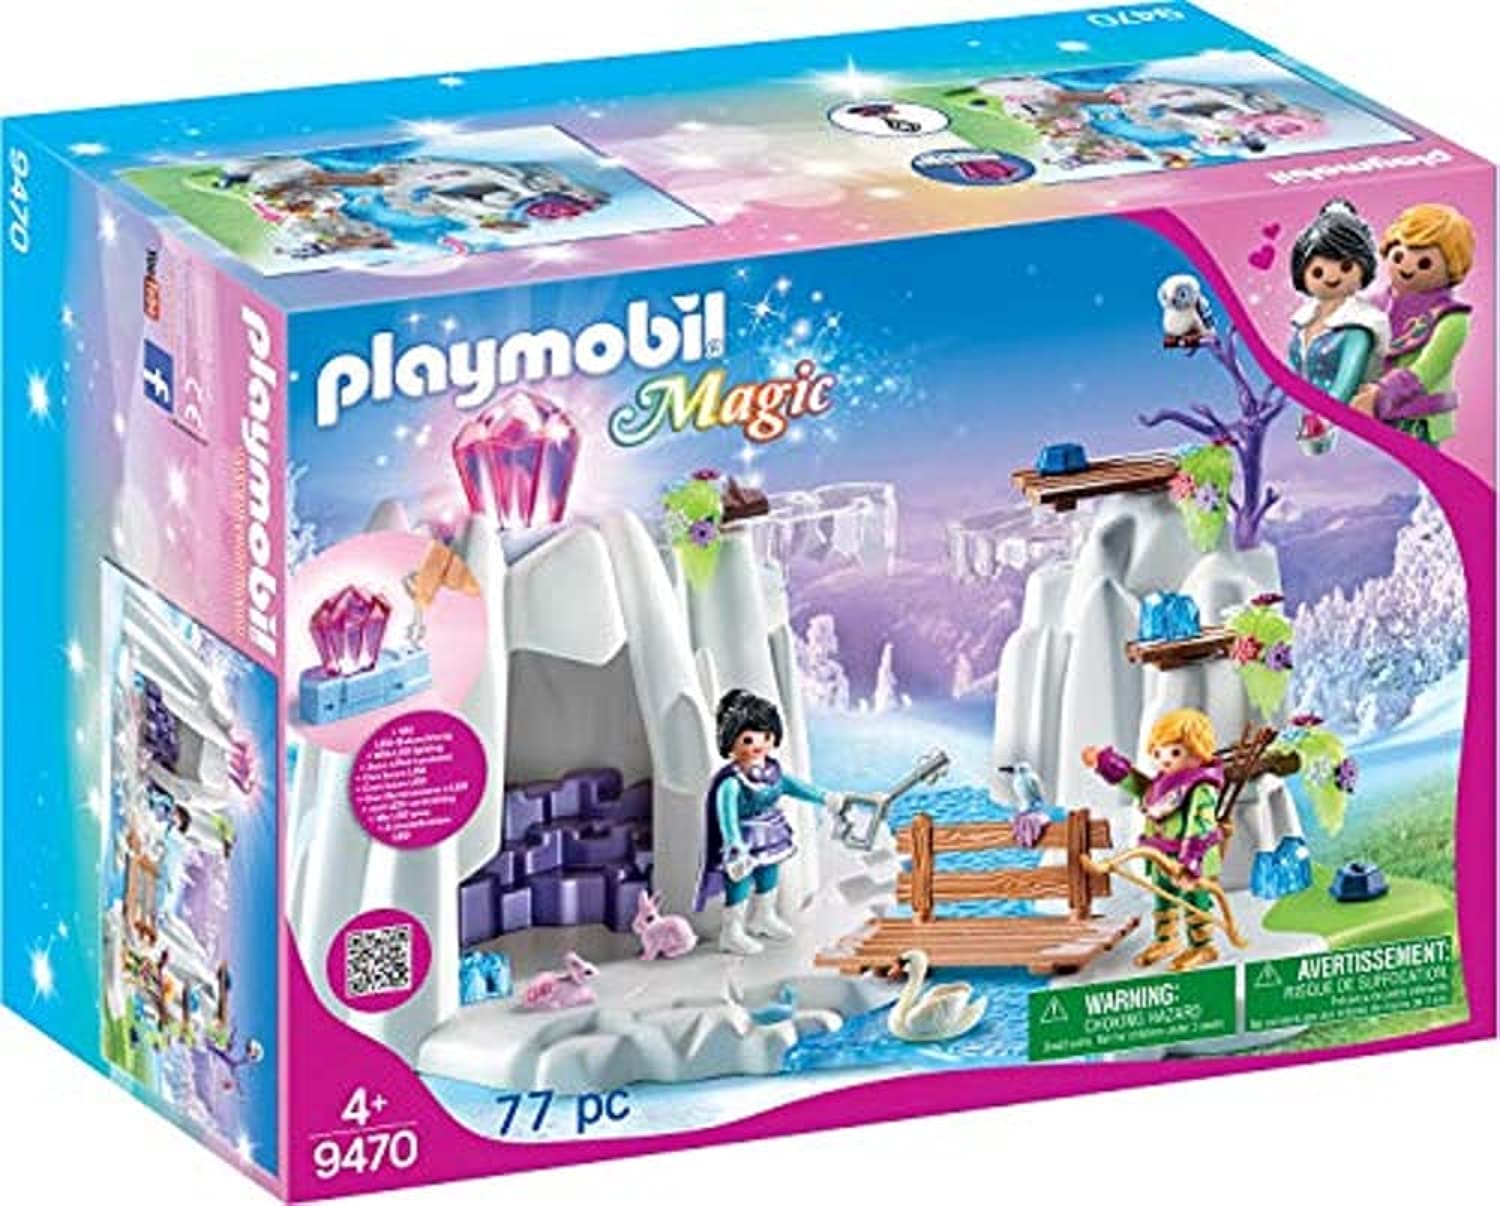 PLAYMOBIL Magic 9470 Suche nach dem Liebeskristall mit Leuchtkristall, Ab 4 Jahren